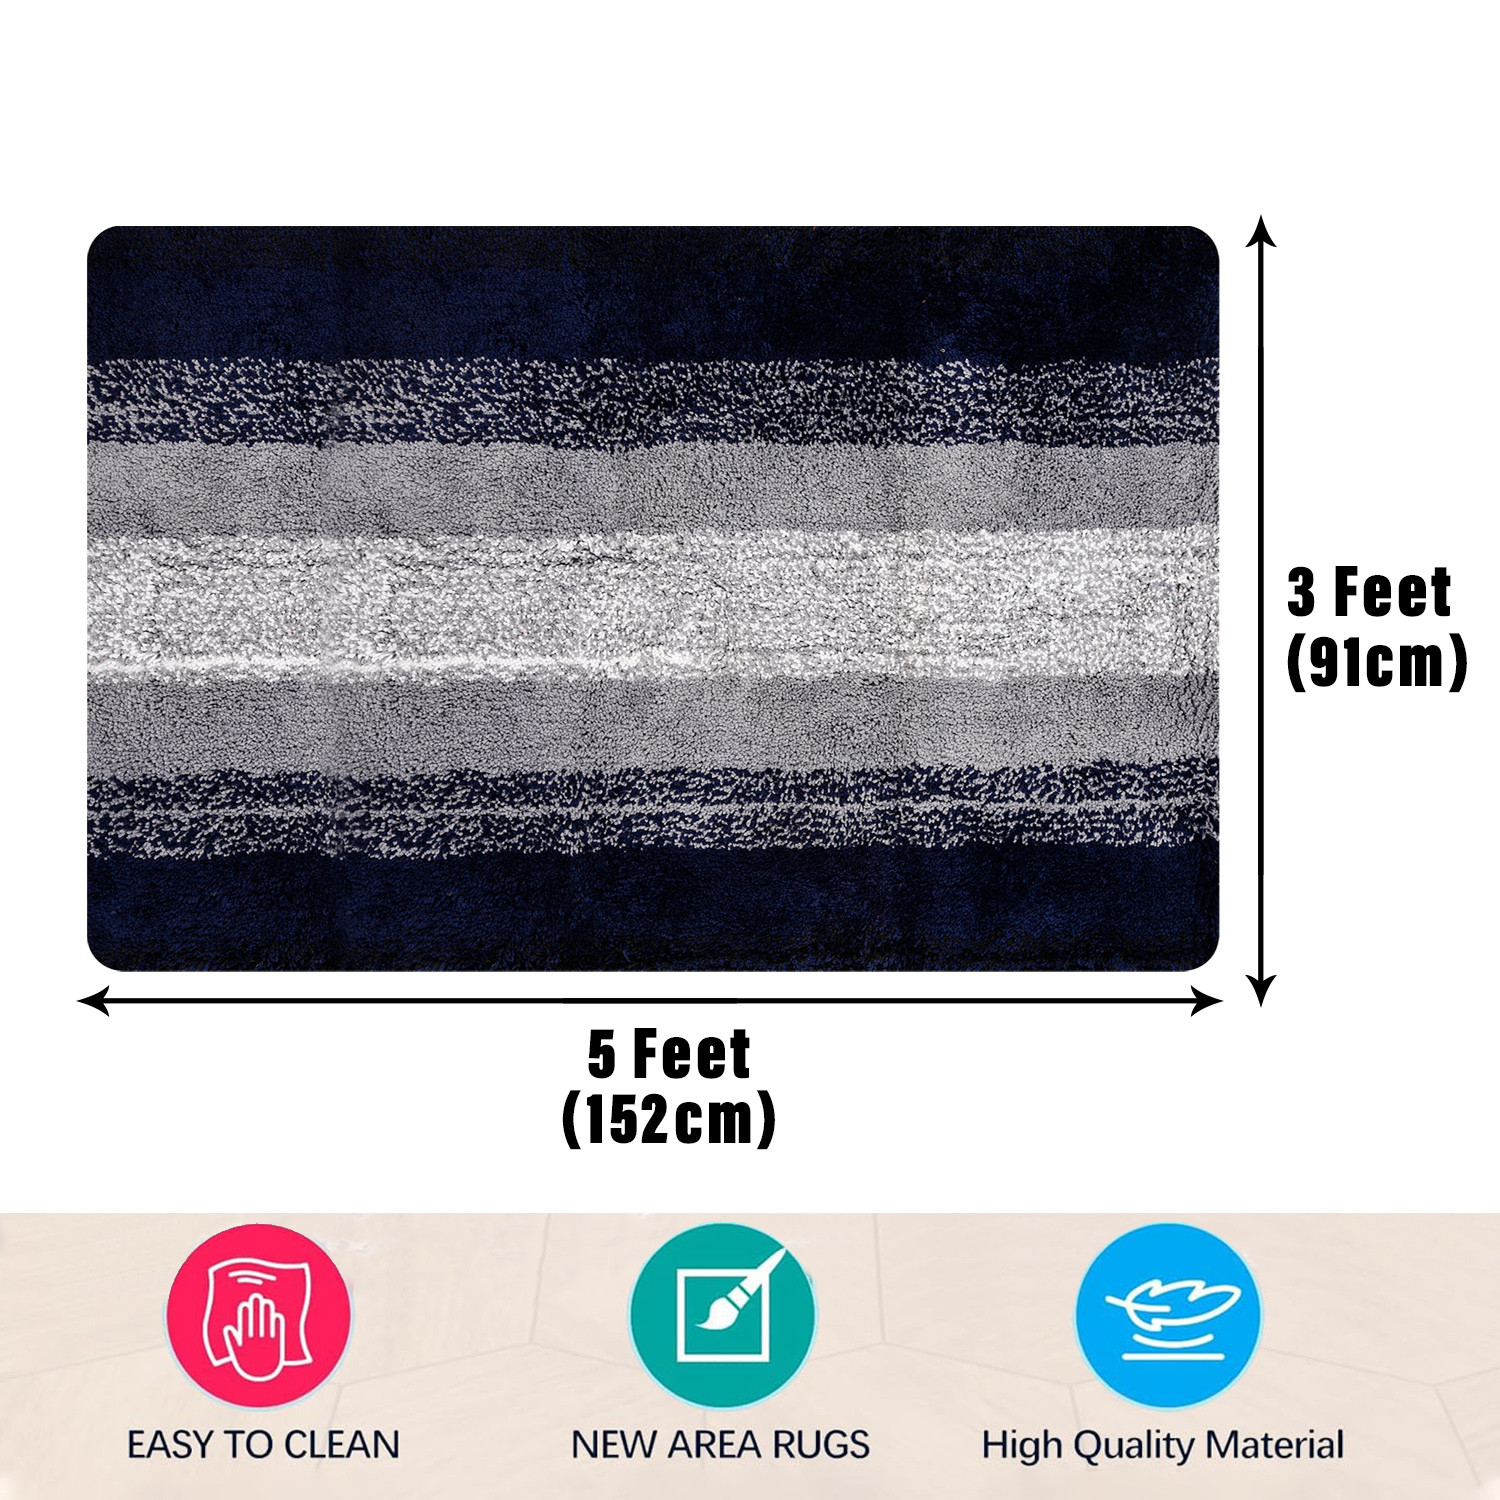 Kuber Industries Carpet | Shaggy Carpet for Living Room | Fluffy Carpet for Bedroom | Blue Patta Rainbow Carpet | Floor Carpet Rug | Non-Slip Bedside Rug | 3x5 Feet | Gray